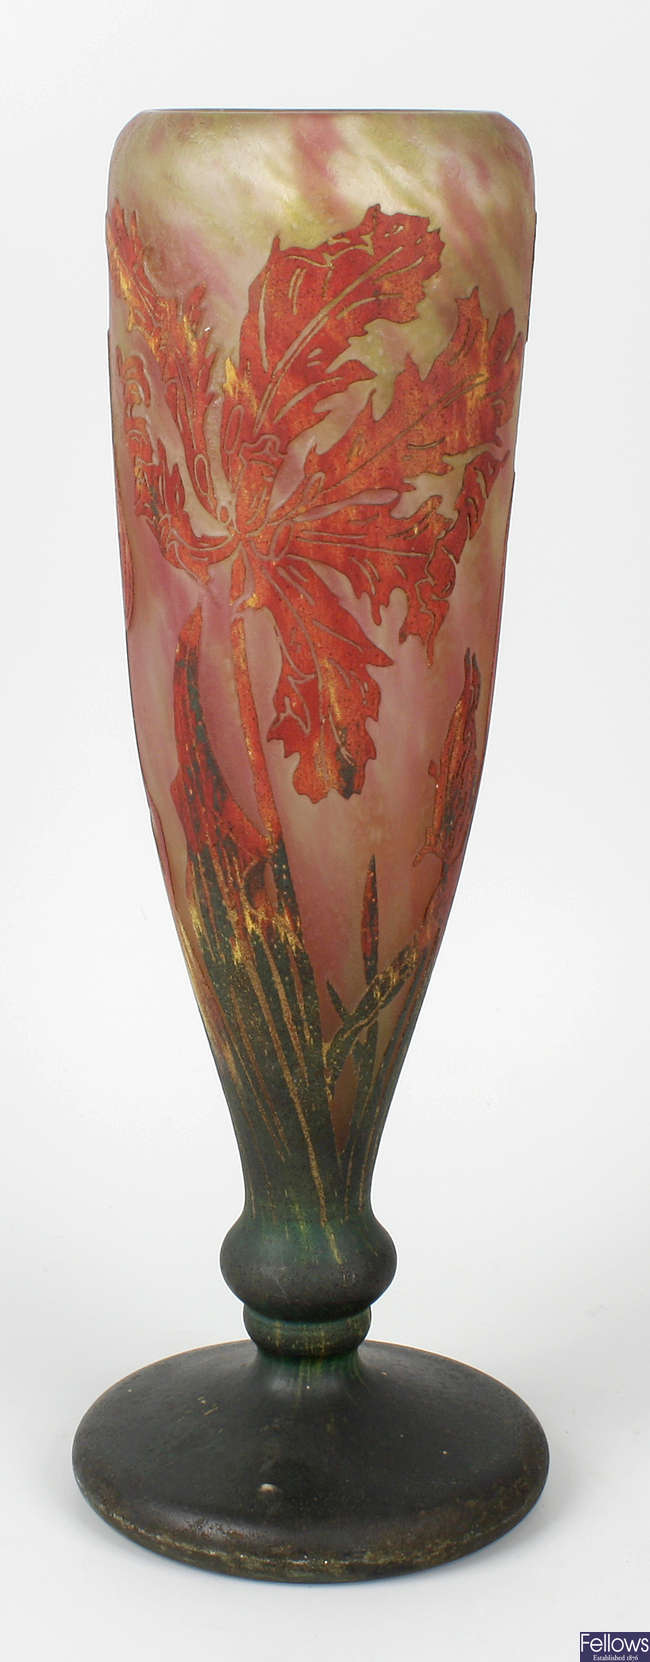 A large Art Nouveau-style cameo glass vase